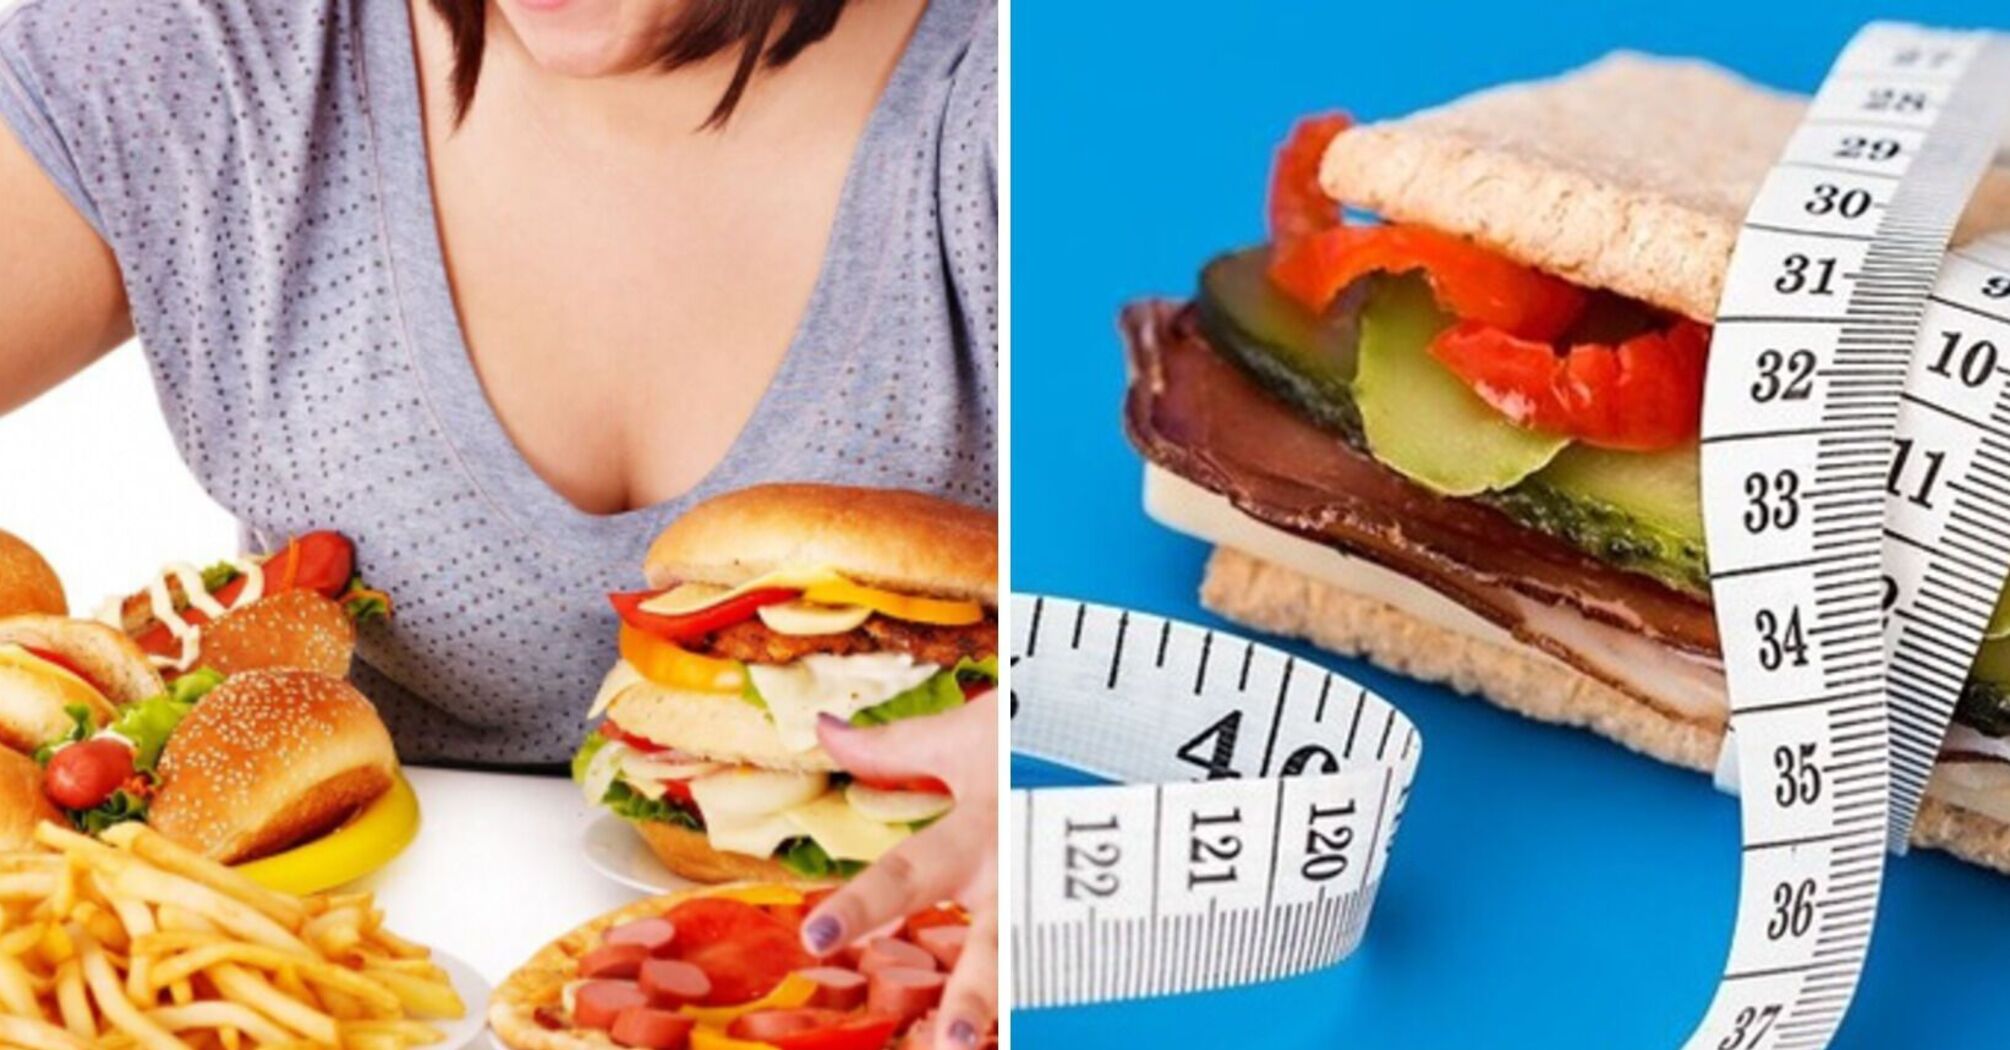 Есть ли у вас нарушения пищевого поведения: тест